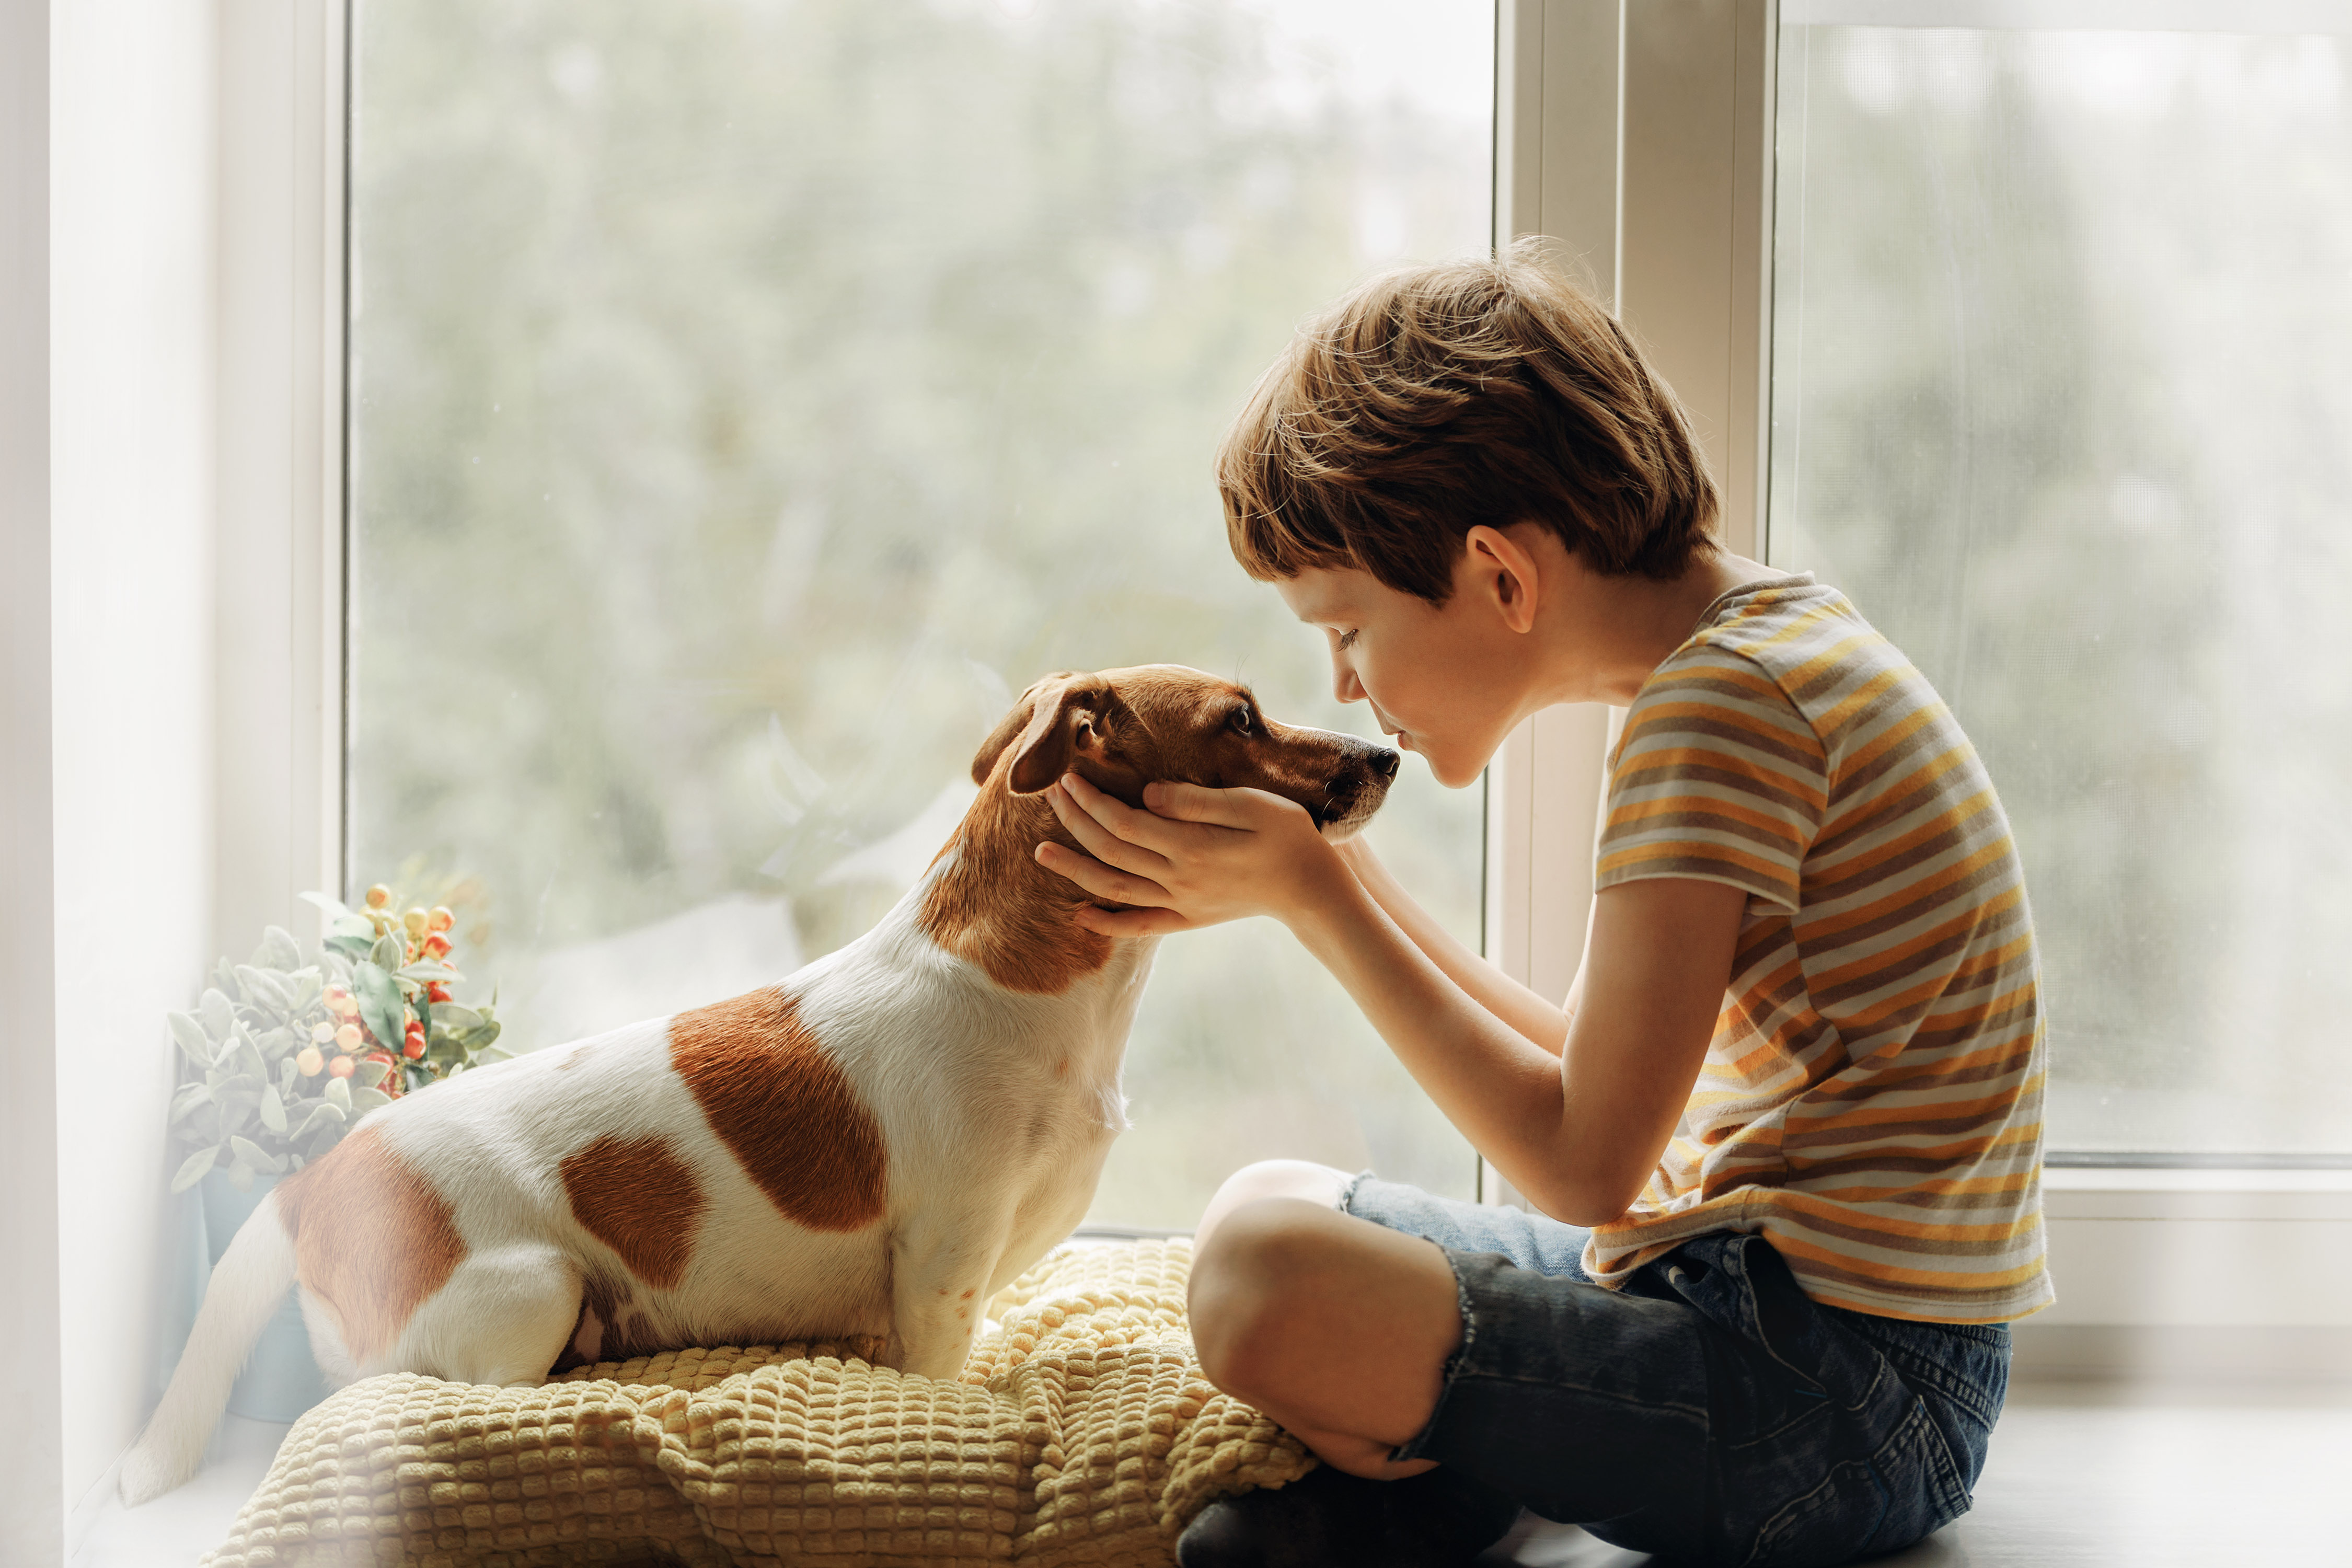 A legtöbb szülő találkozott már – vagy találkozni fog – azzal a kérdéssel, hogy „kaphatnék egy kiskutyát?” Lehet, hogy a gyerekek még ösztönösen tudják, mi a jó nekik, mindenesetre az tény, hogy az állattartásnak rengeteg pozitív hatása van.